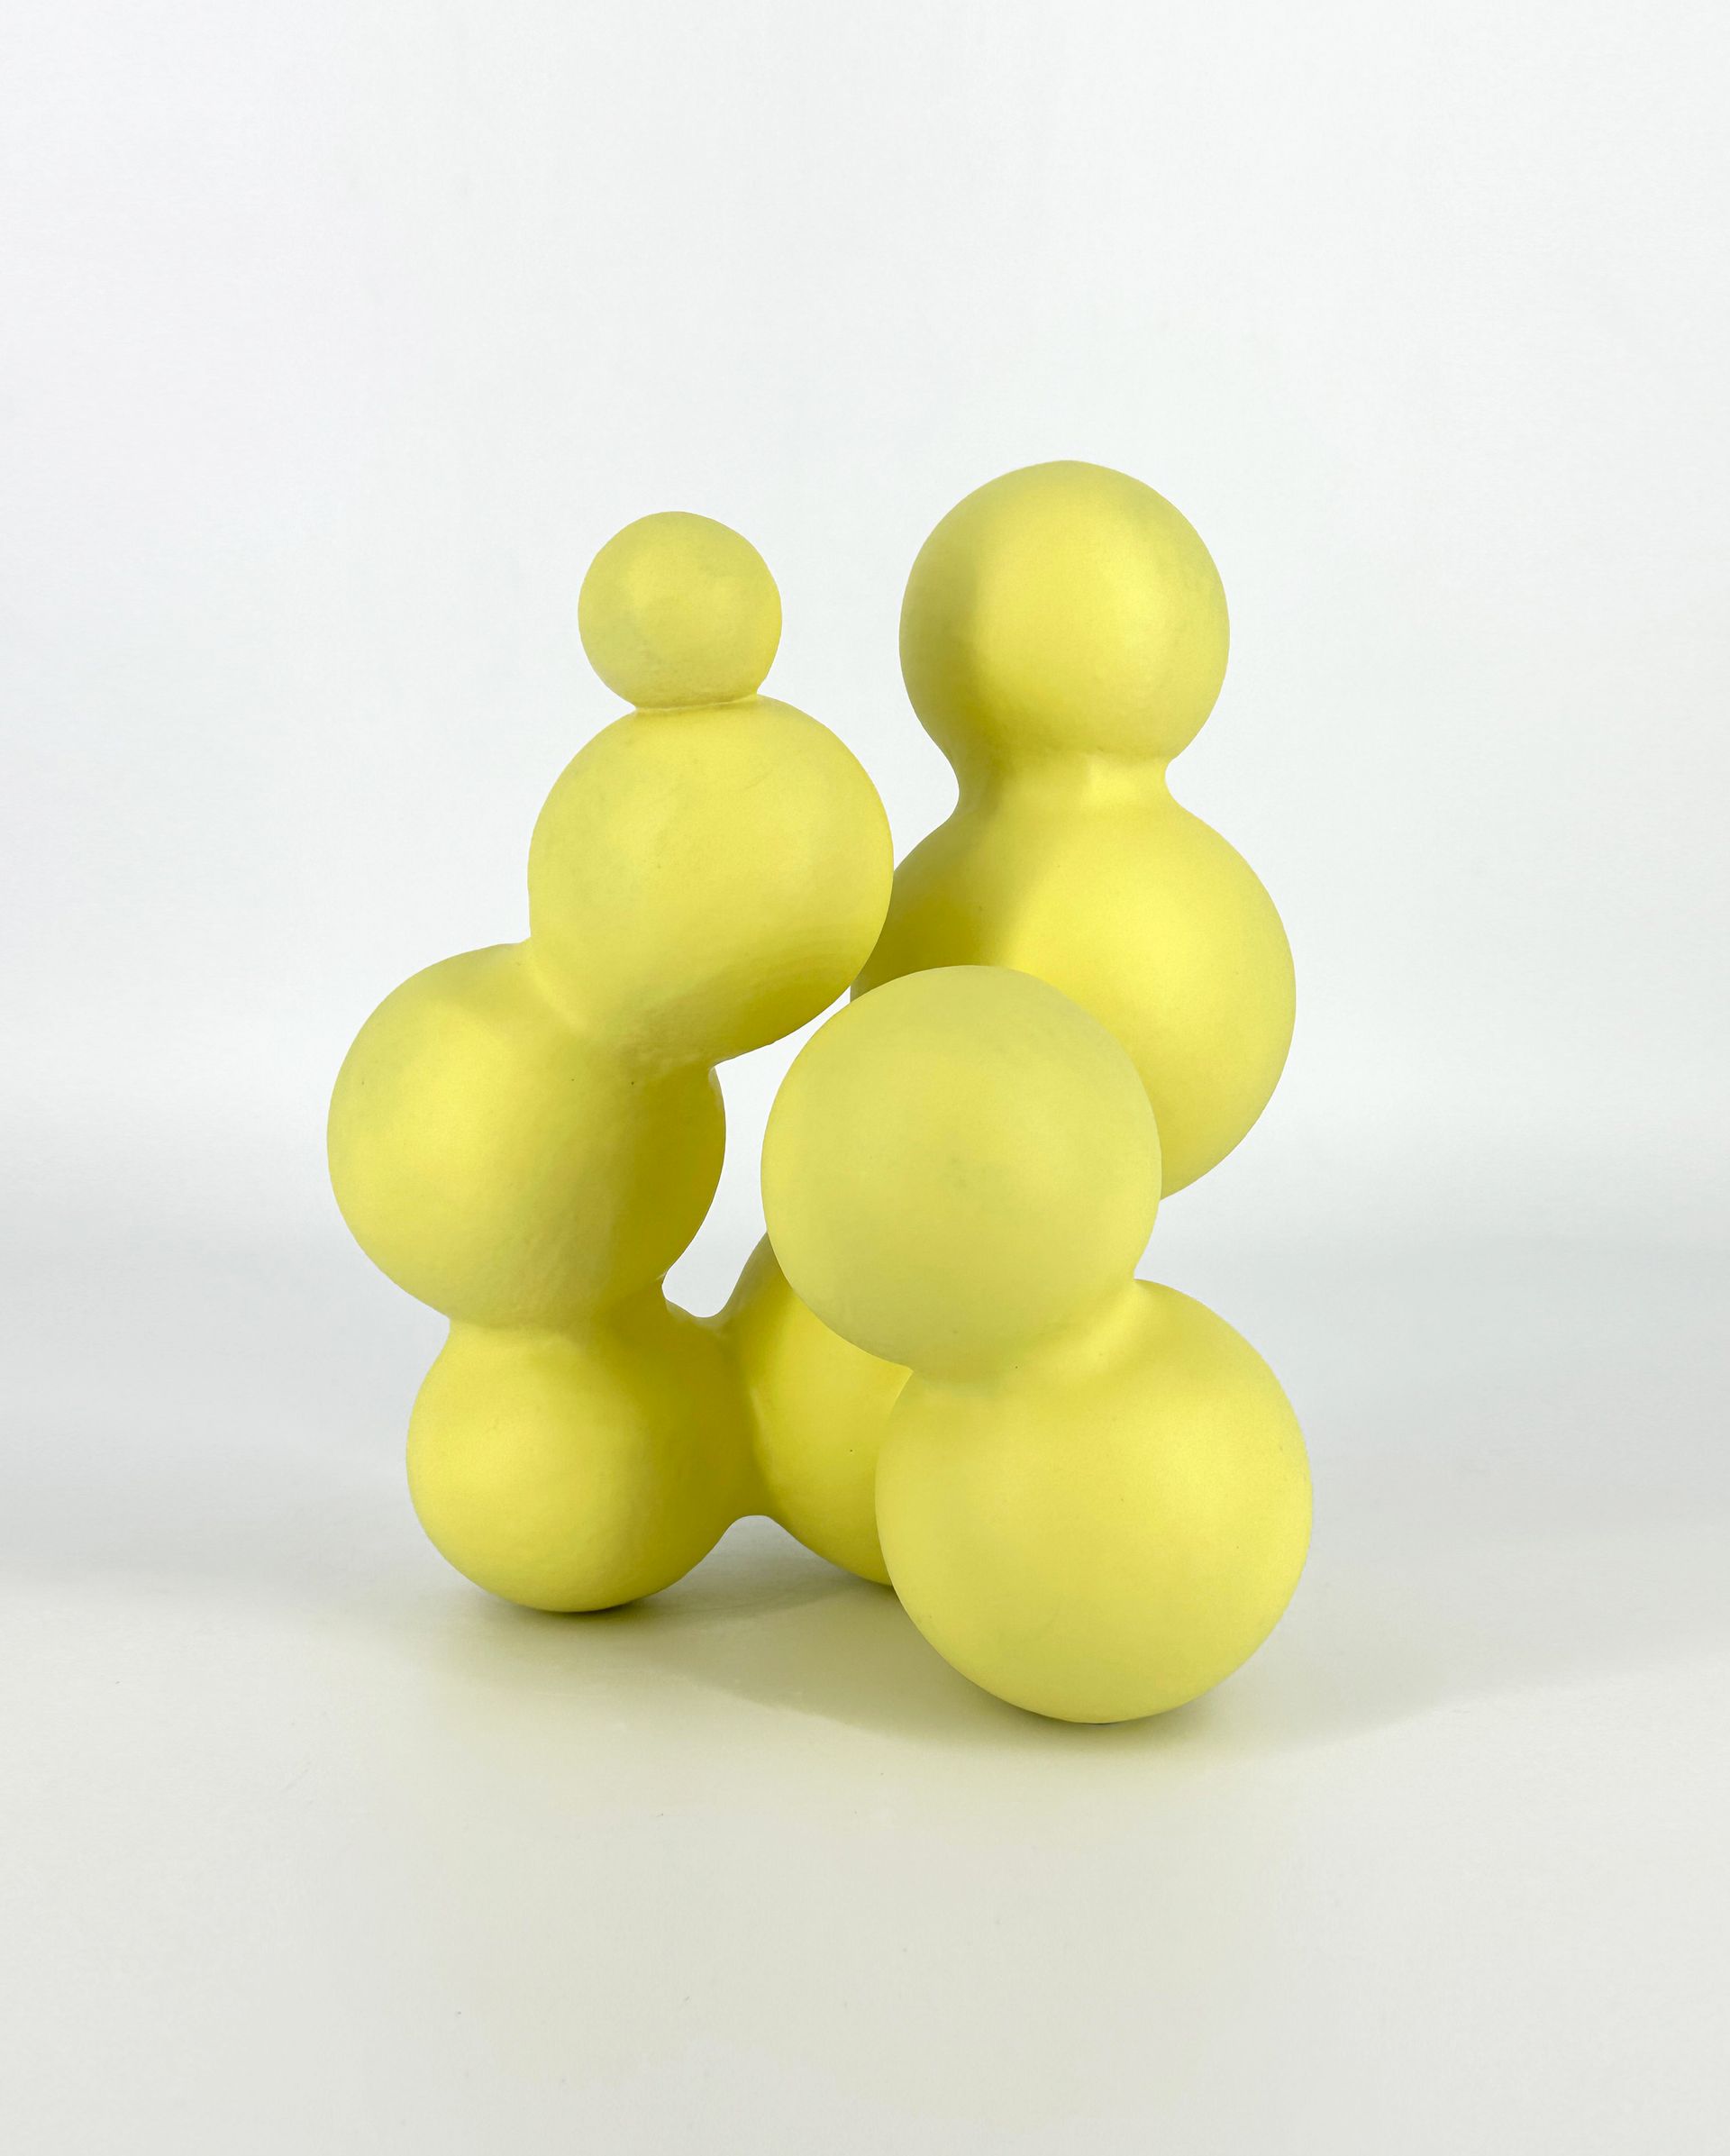 Елена Алексенко (Скульптура - 
                  15 x 21 см) Лимонные шарики